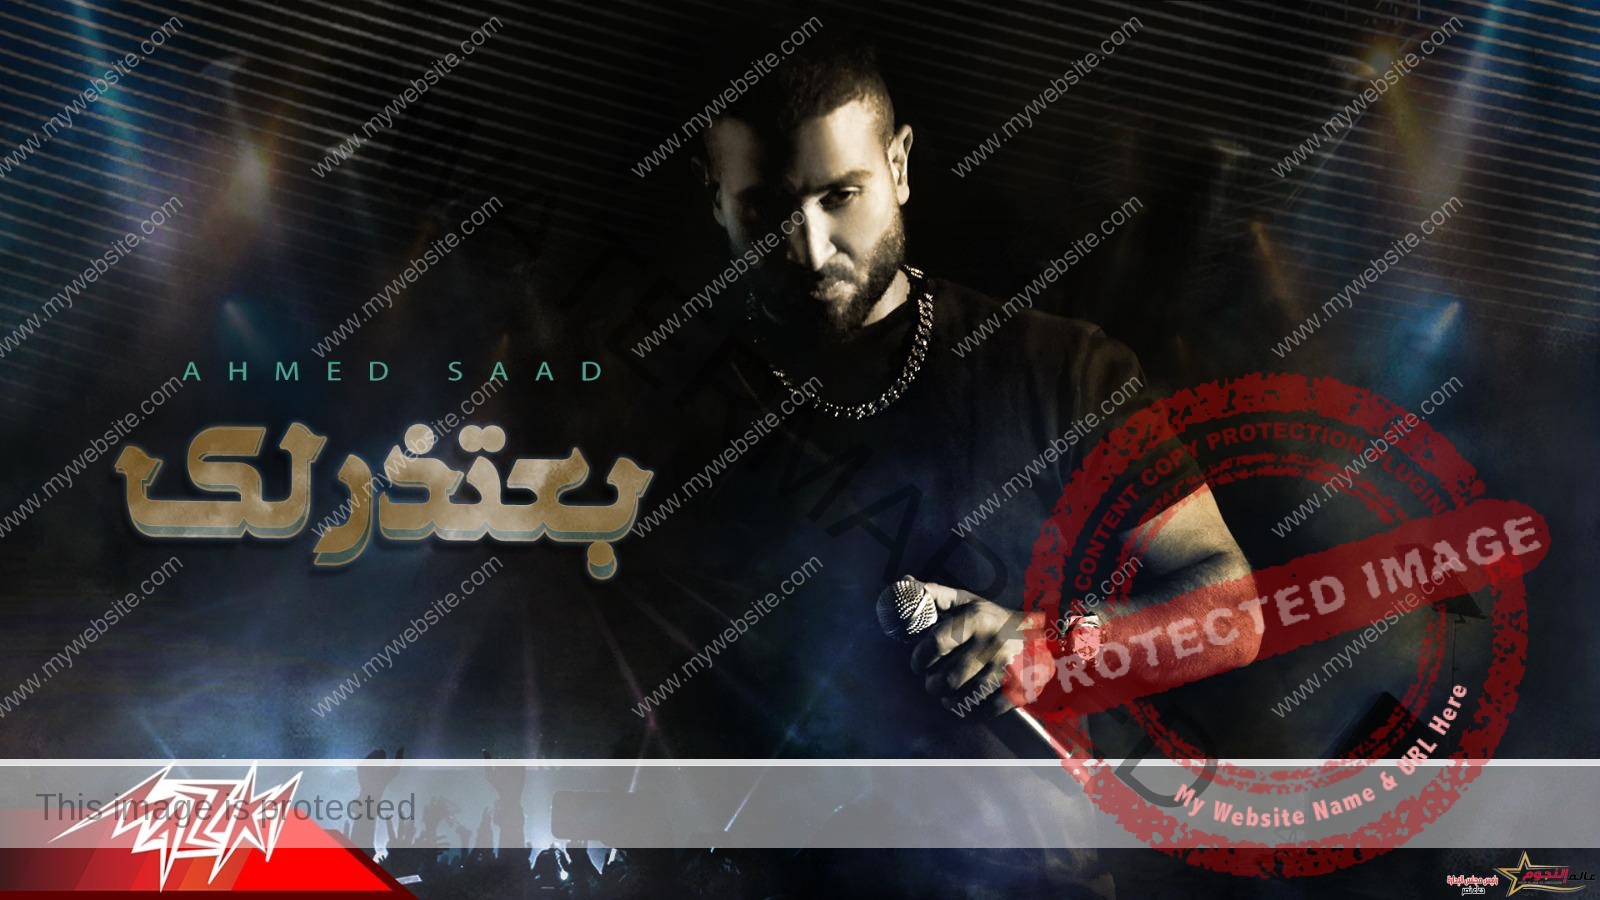 النجم أحمد سعد بعد تشويقه لجمهوره يطرح الآن " بعتذرلك "